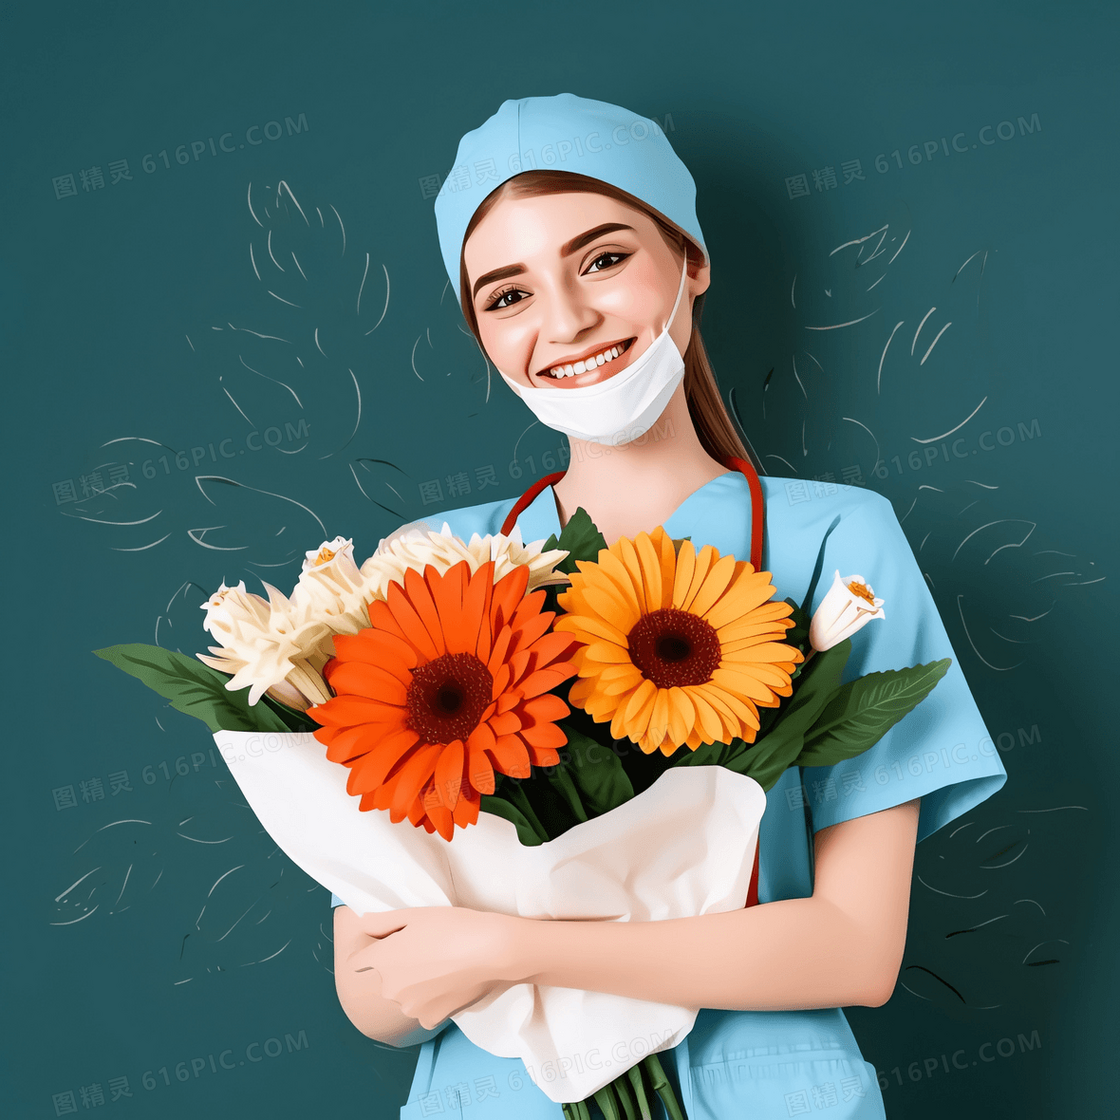 国外的护士手捧鲜花开心的笑